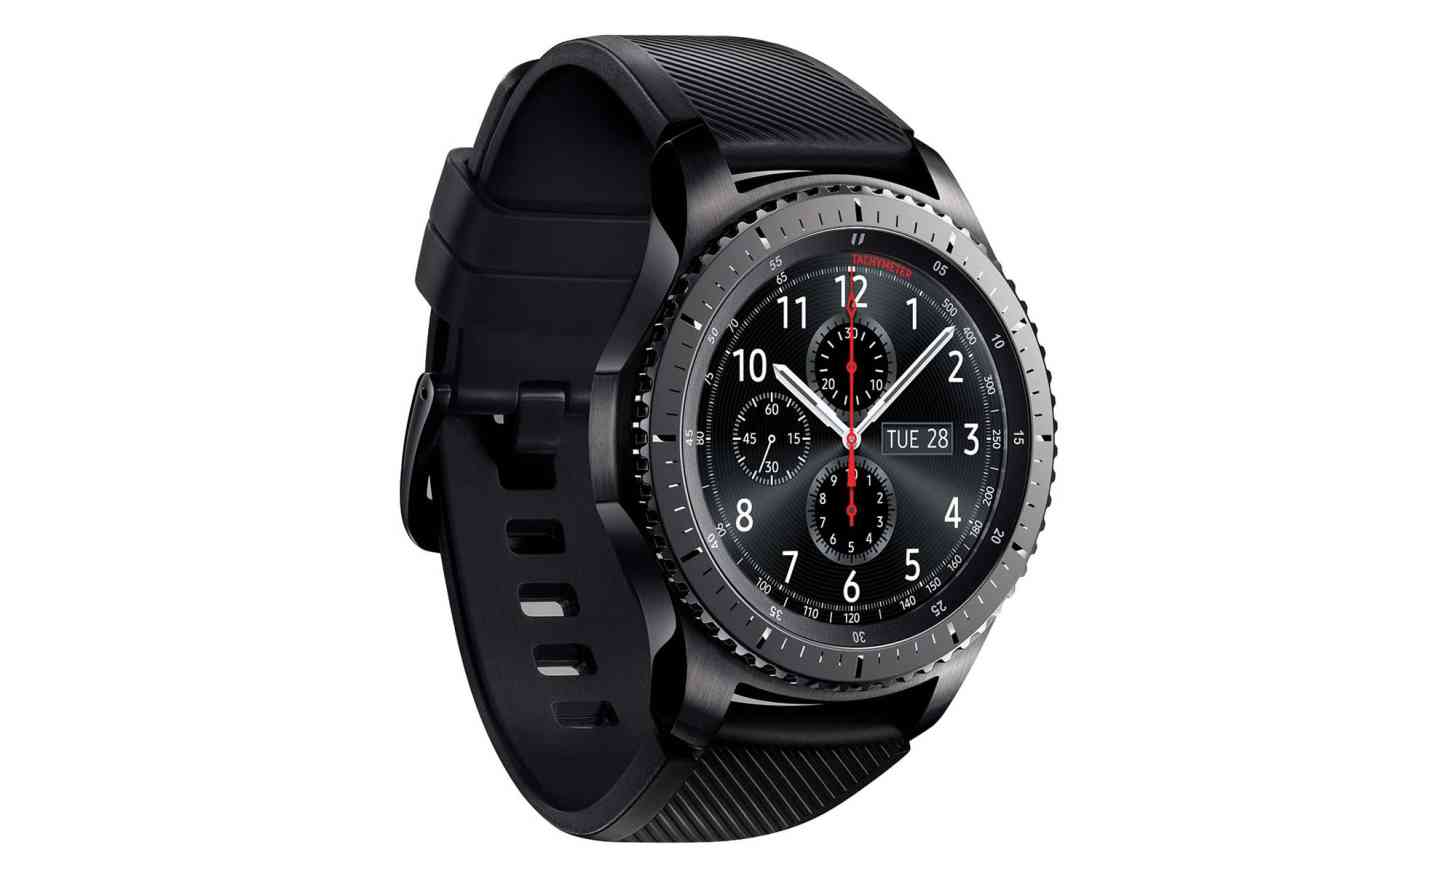 Samsung Gear S3 Frontier watch